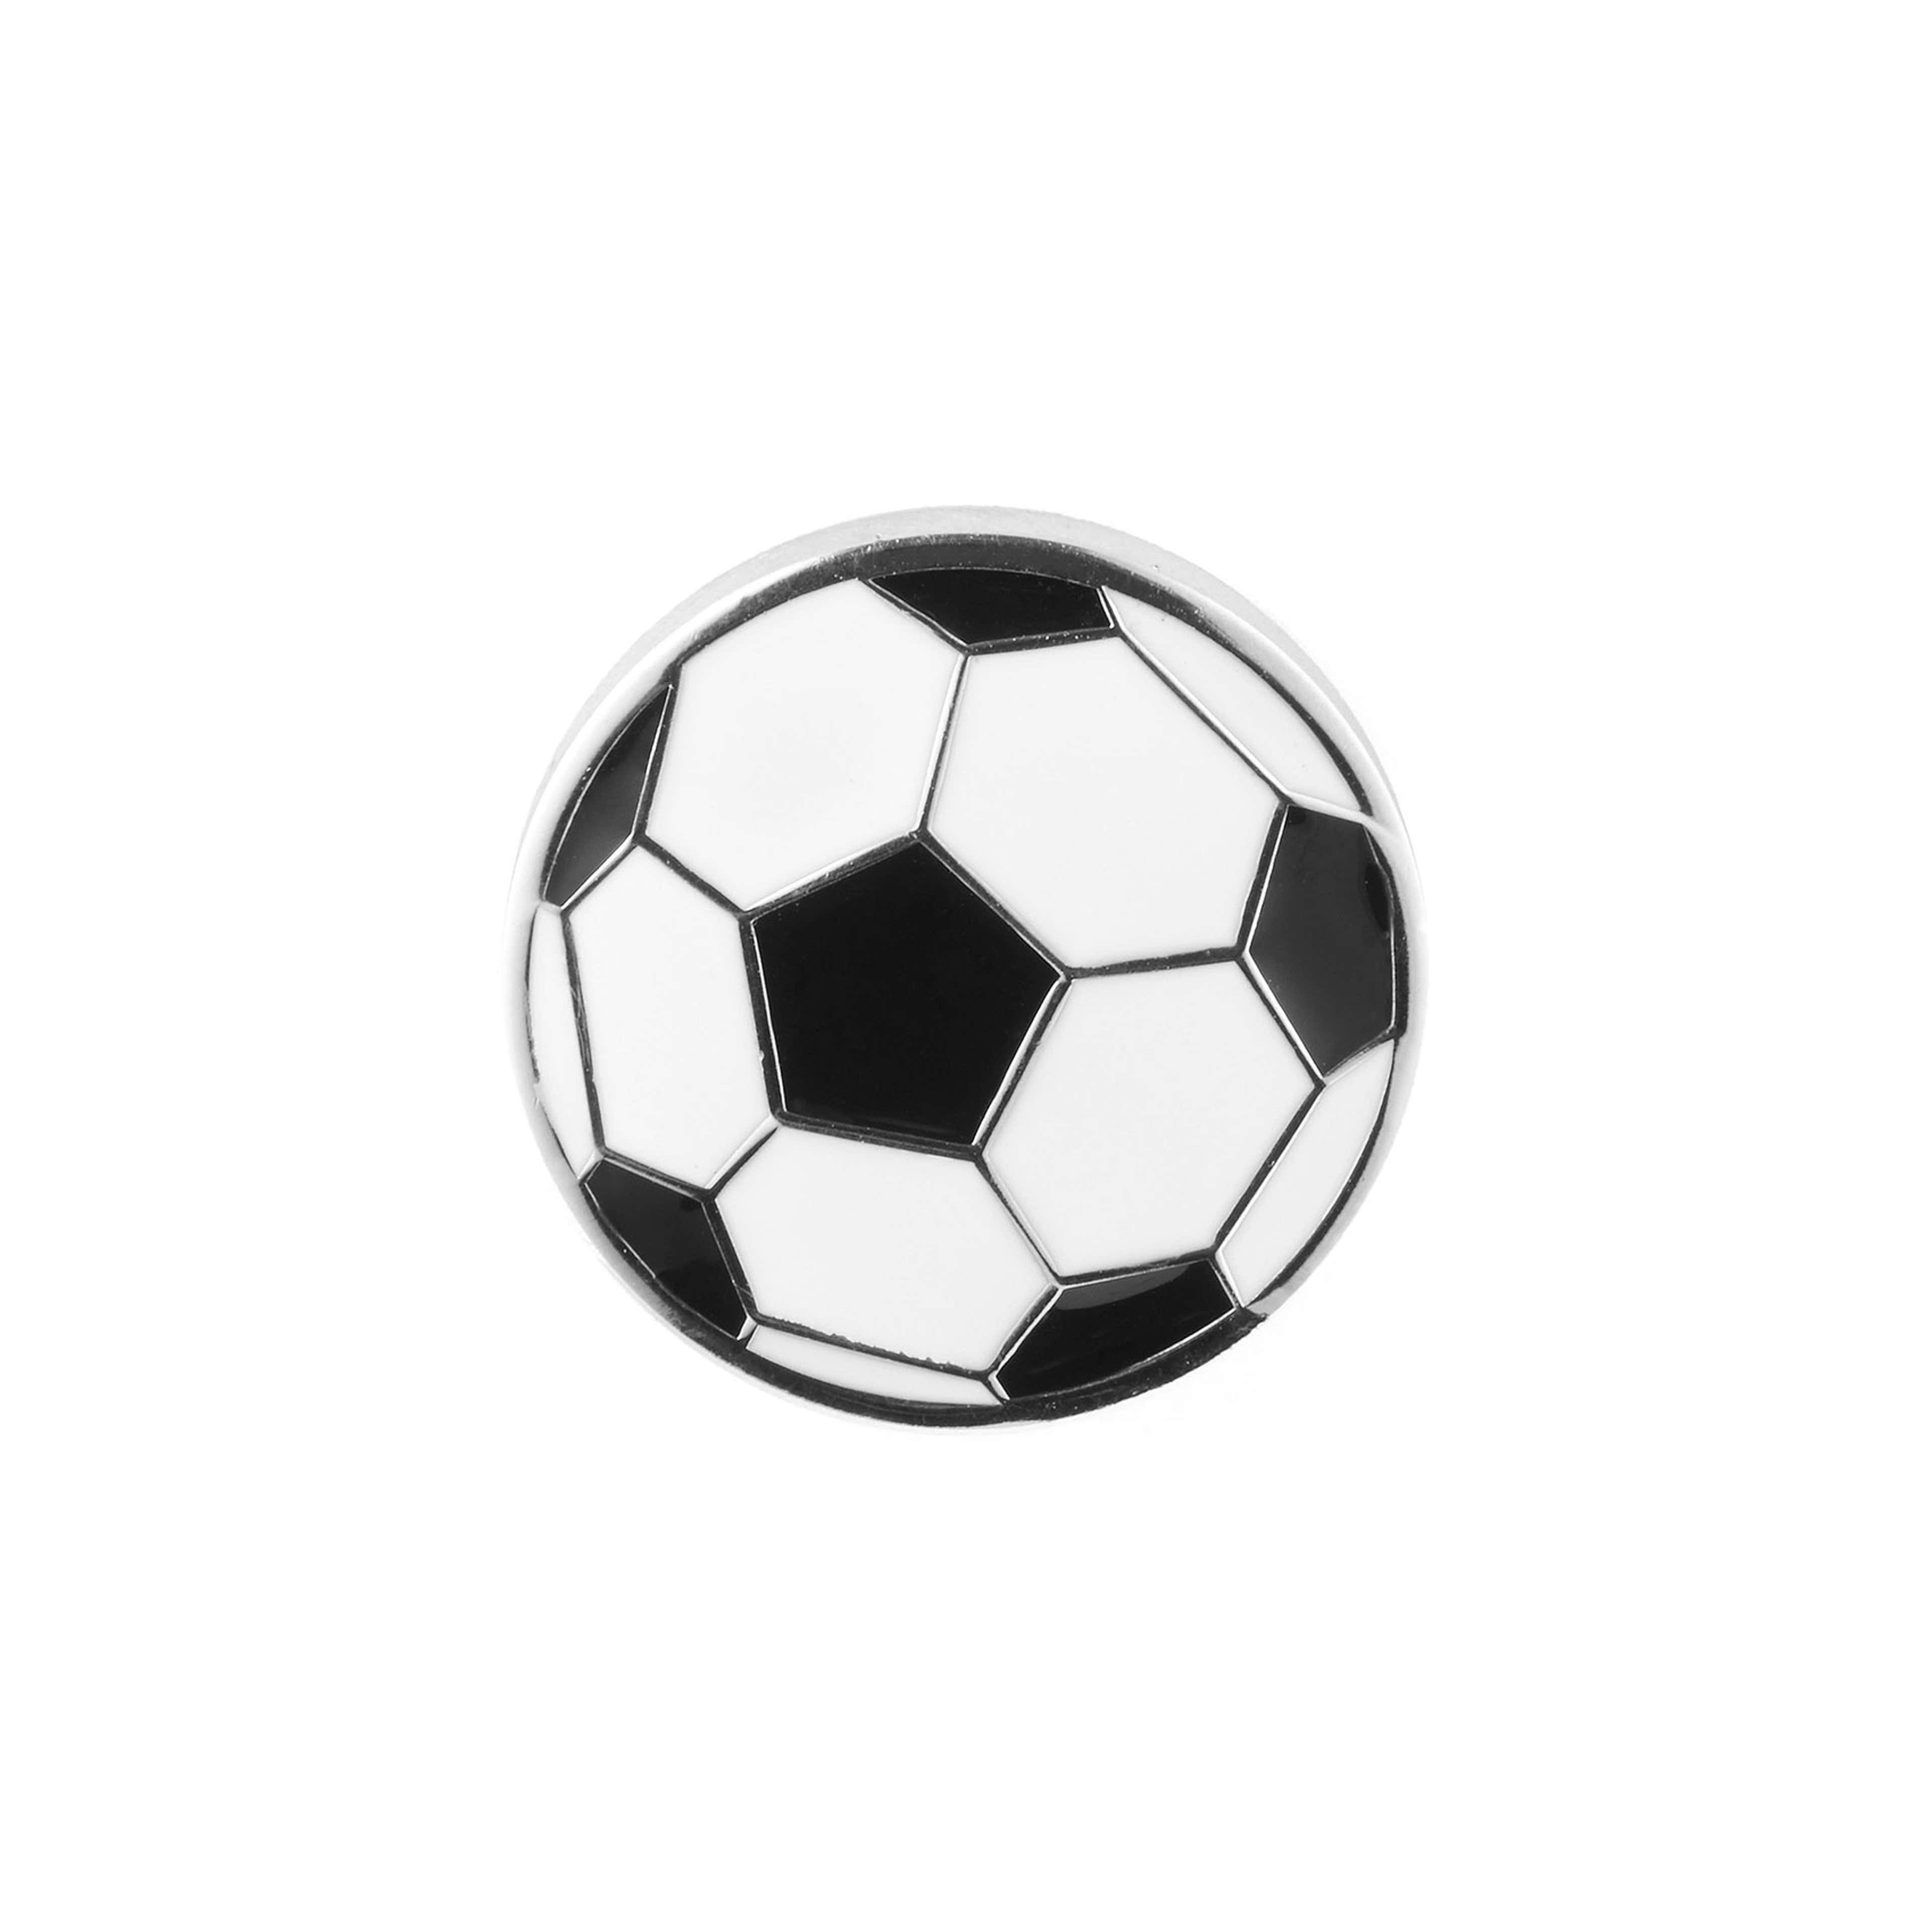 Pin de solapa con balón de fútbol